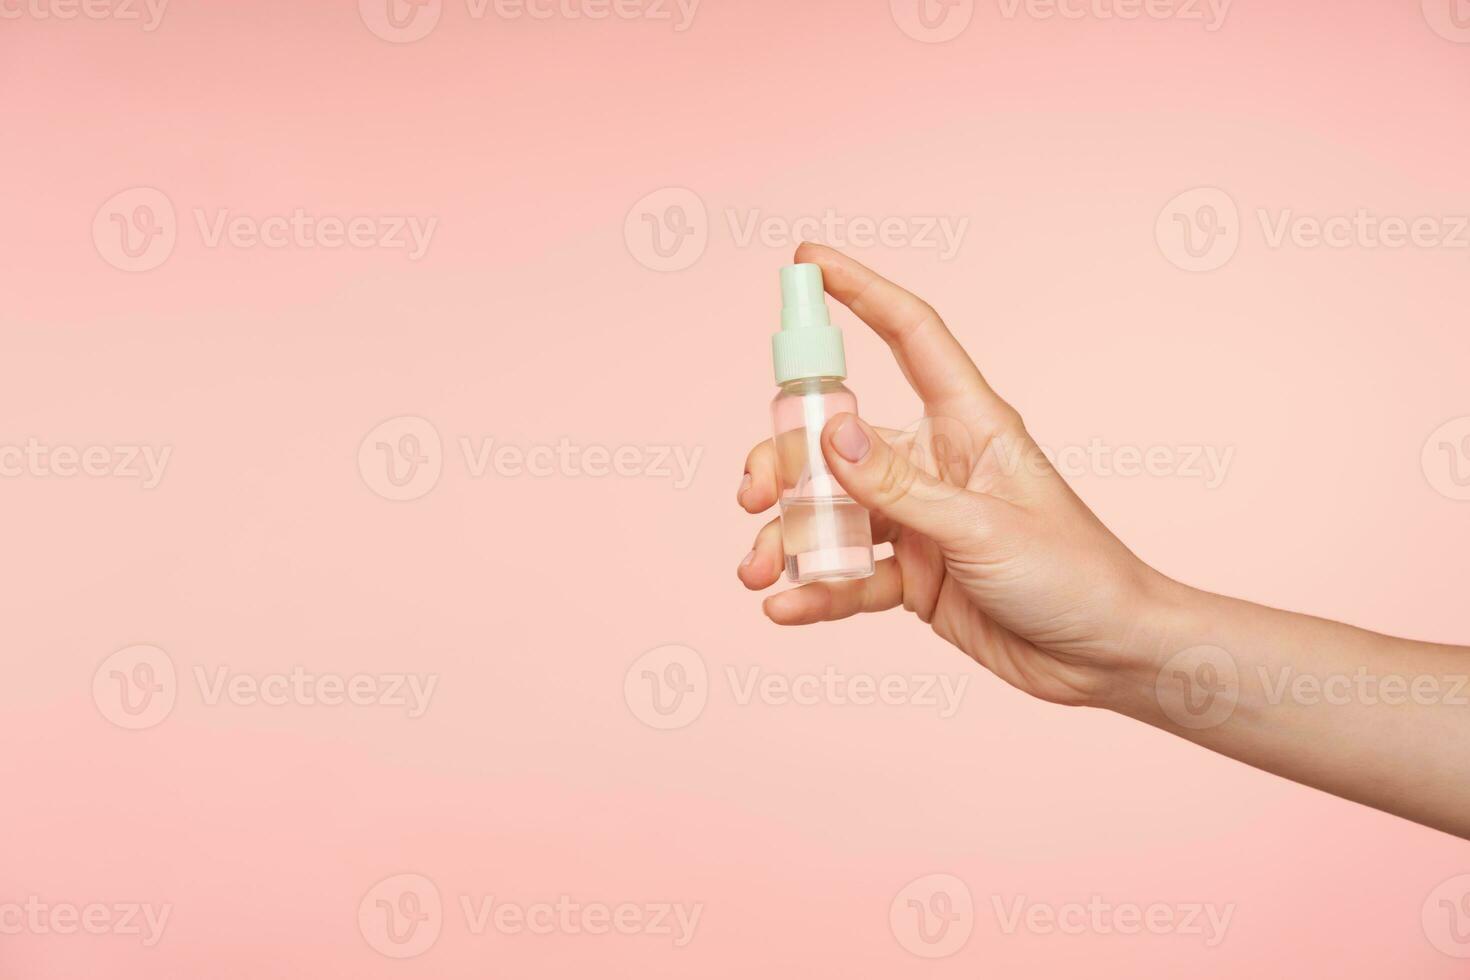 estudio foto de joven femenino Piel blanca mano acuerdo dedo índice en botón de botella mientras yendo a rociar contenido, aislado terminado rosado antecedentes